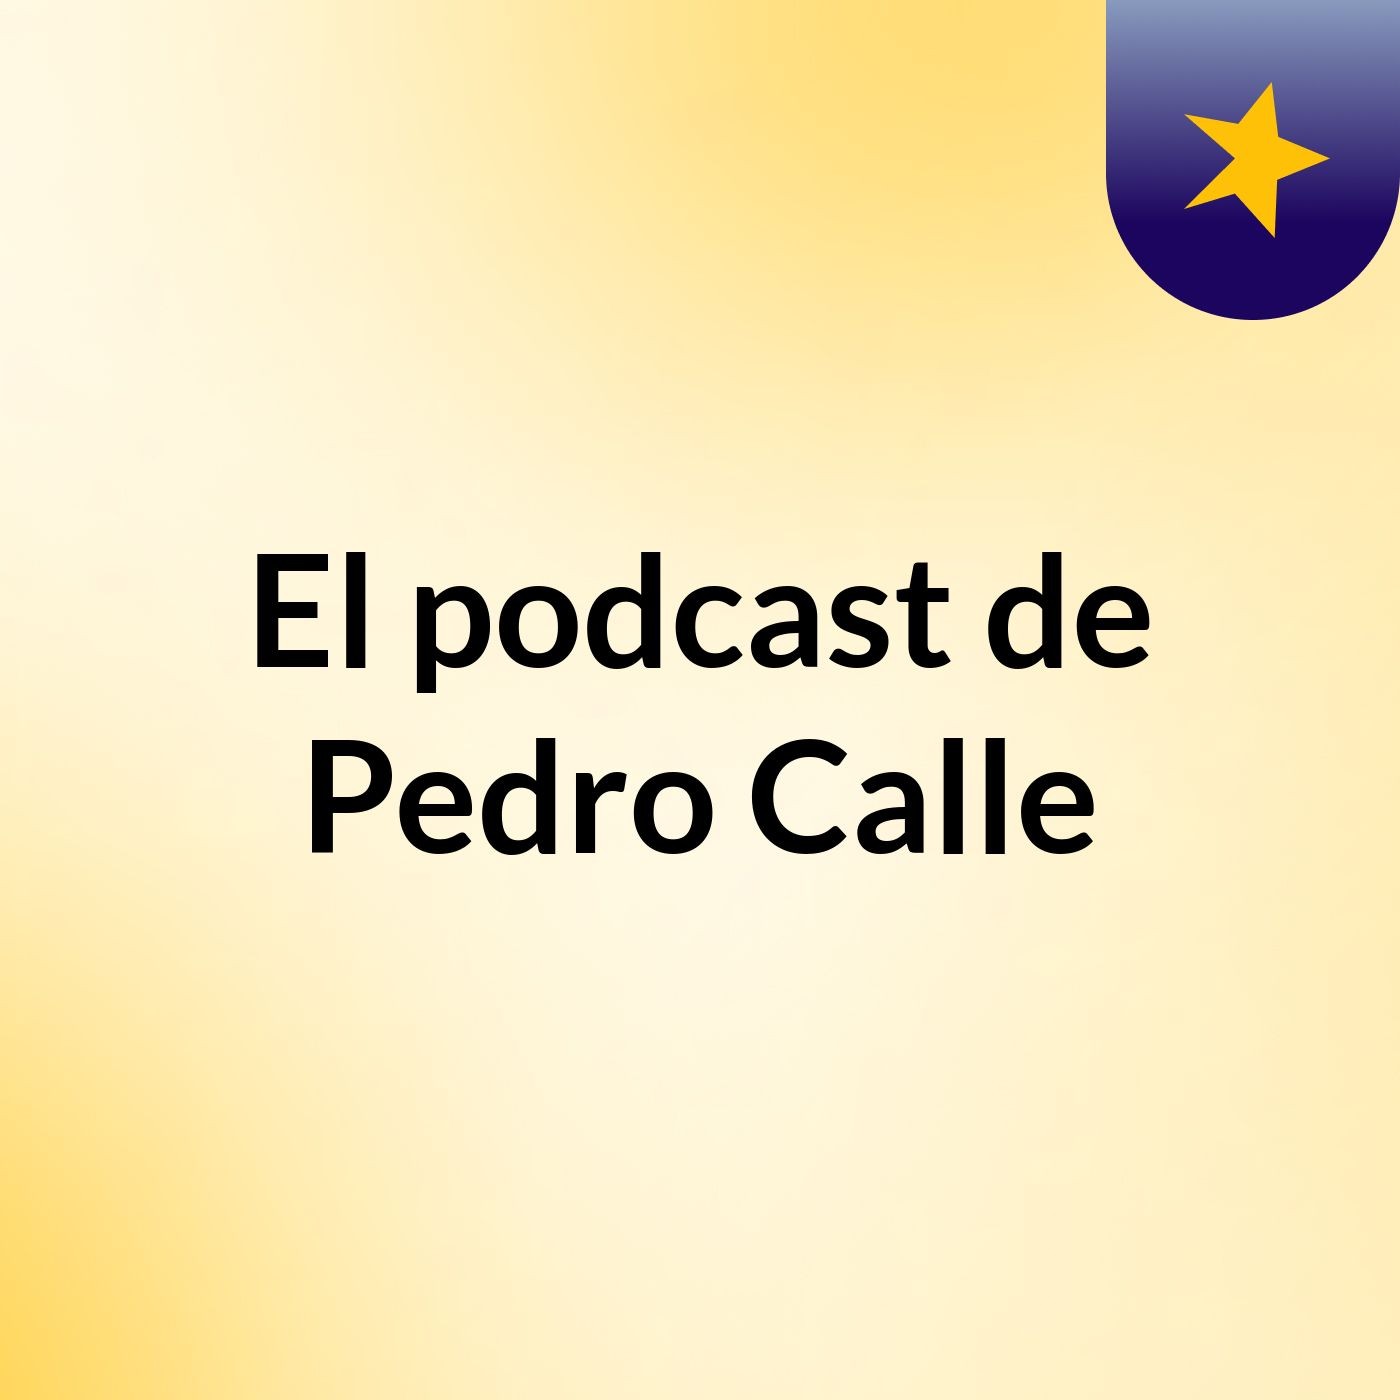 Villarreal 0-1 Barça - El podcast de Pedro Calle